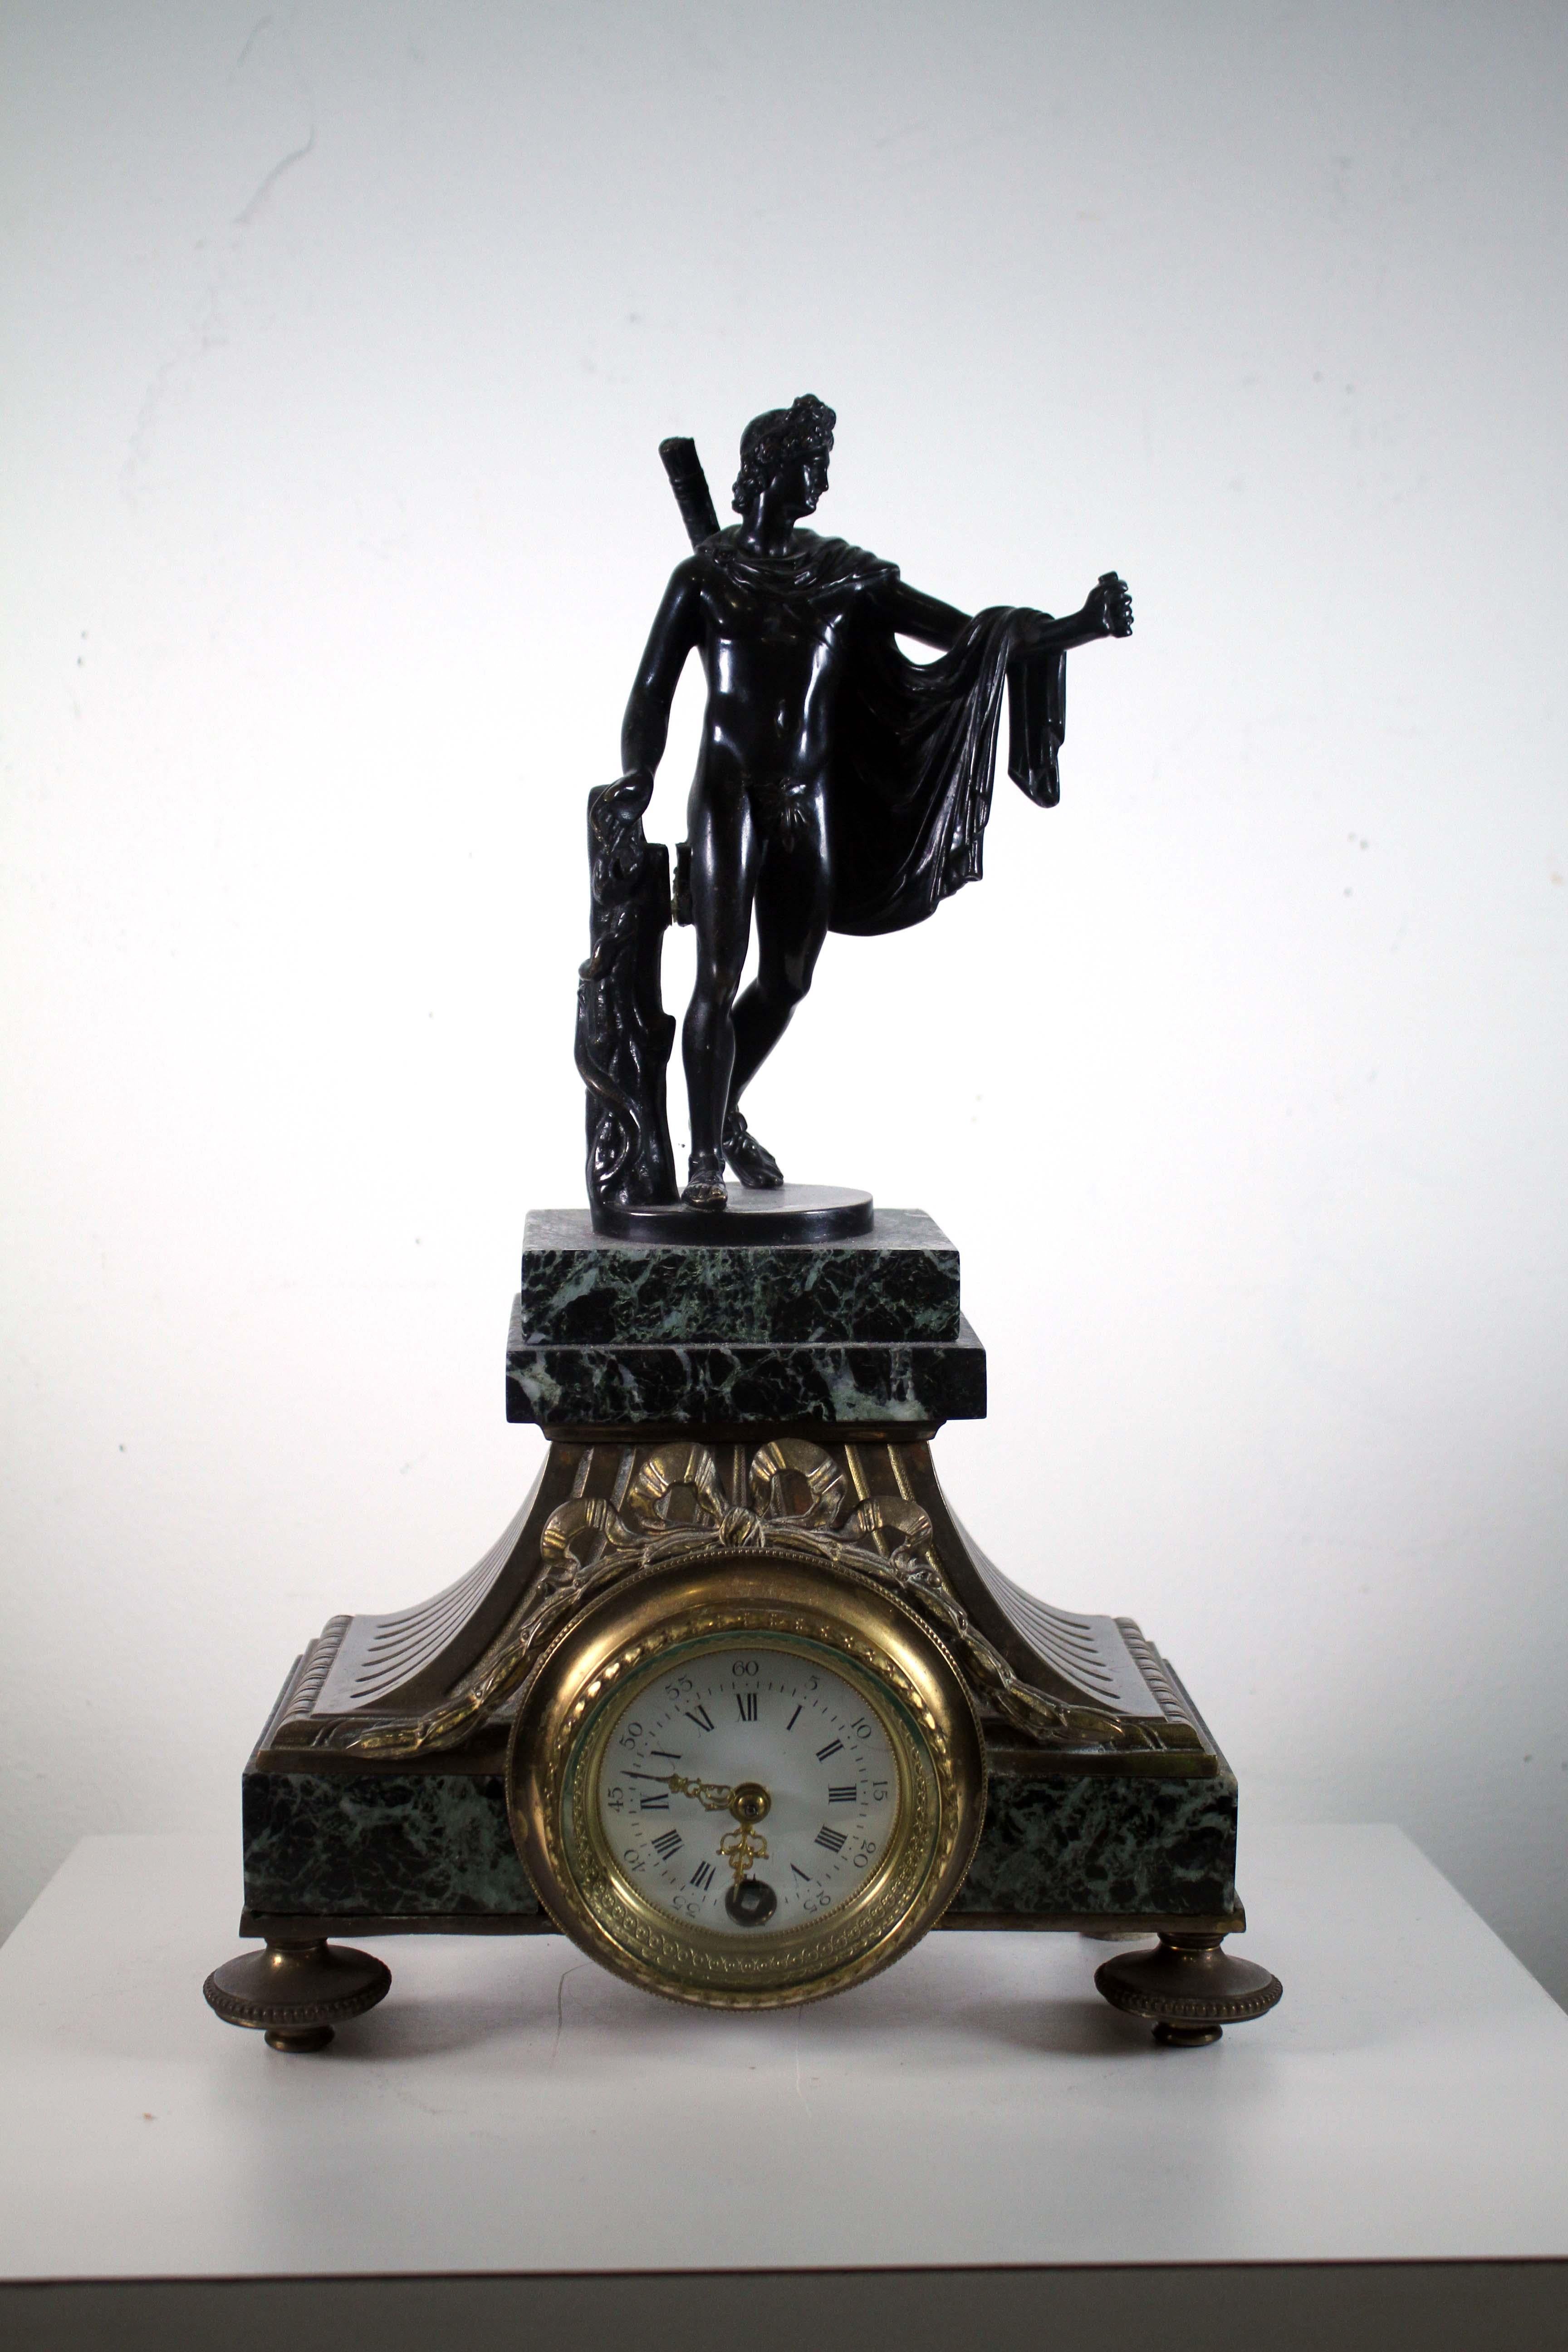 Dies ist eine atemberaubende antike Schweizer Lenzkirich Uhr. Sie besitzt ein schönes Gehäuse aus Eisenbronze mit einer Apollo-Figur auf dem Zifferblatt. Das Zifferblatt ist mit zierlichen schwarzen römischen Ziffern und einem Paar fein gearbeiteter